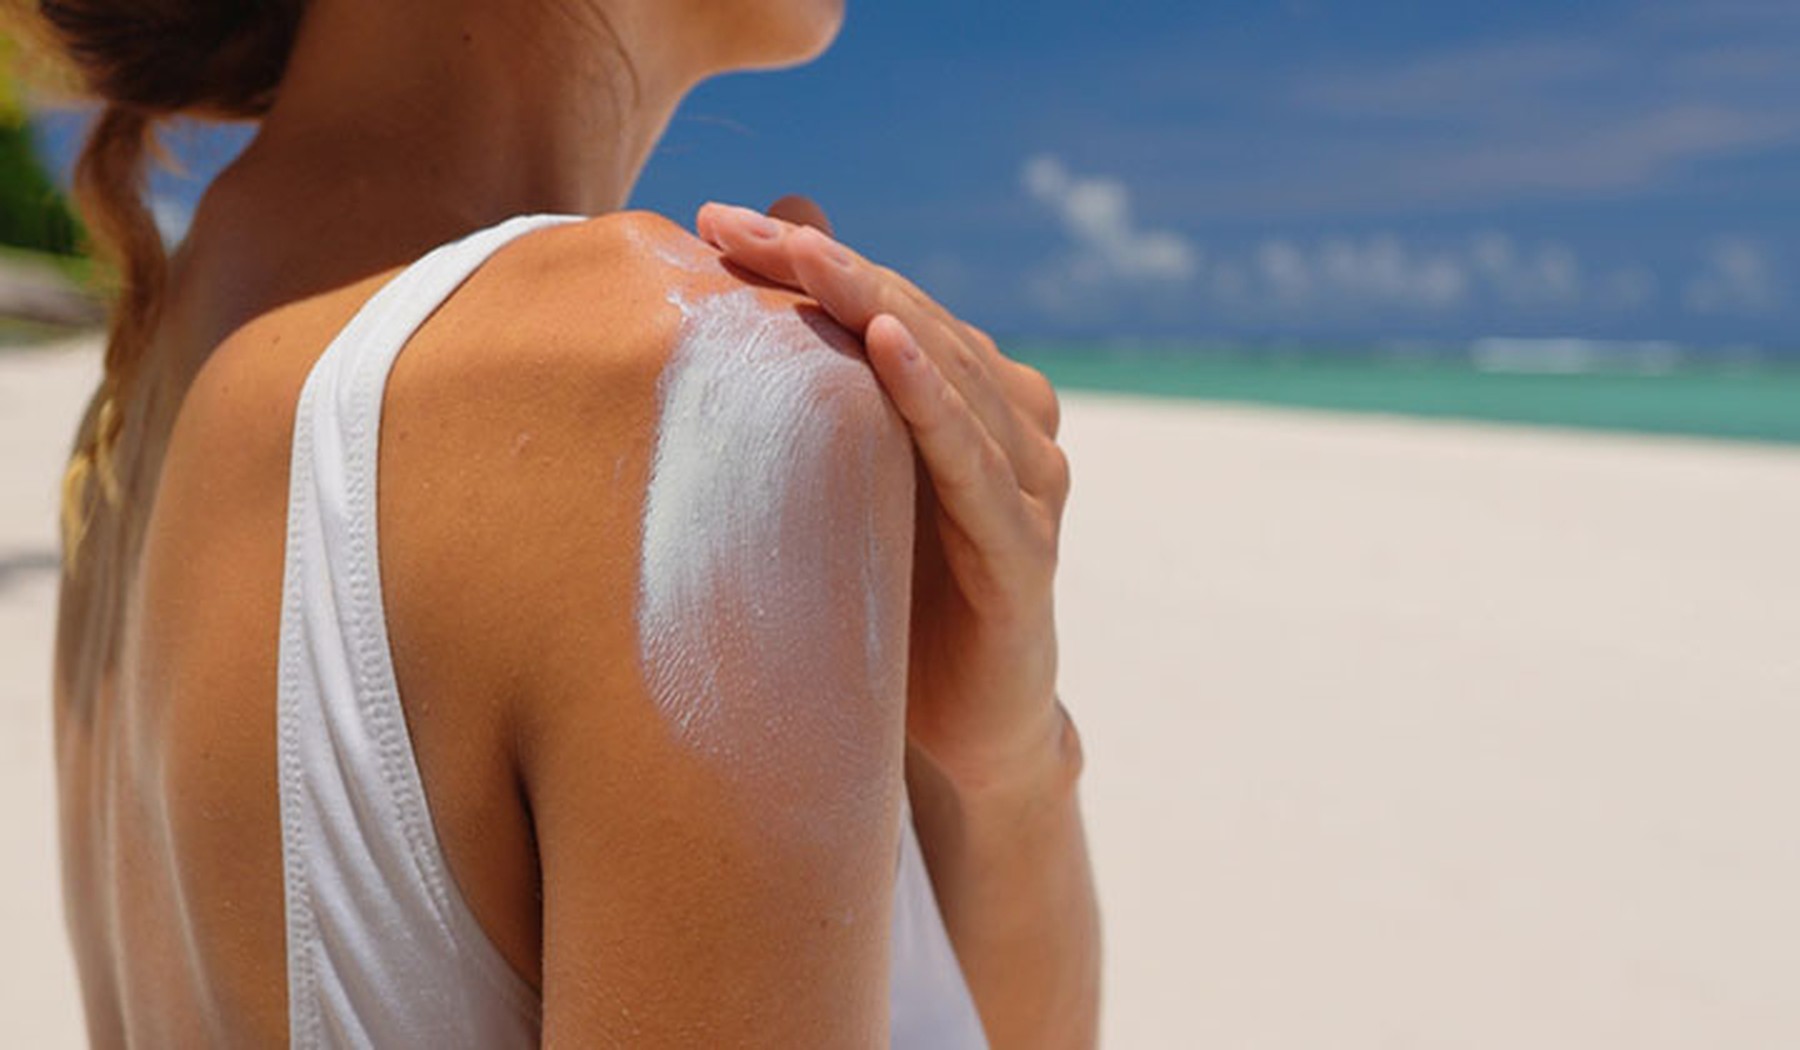 Mujer echándose crema solar en el hombro. Lleva un bañador blanco y de fondo se ve una playa paradisiaca.